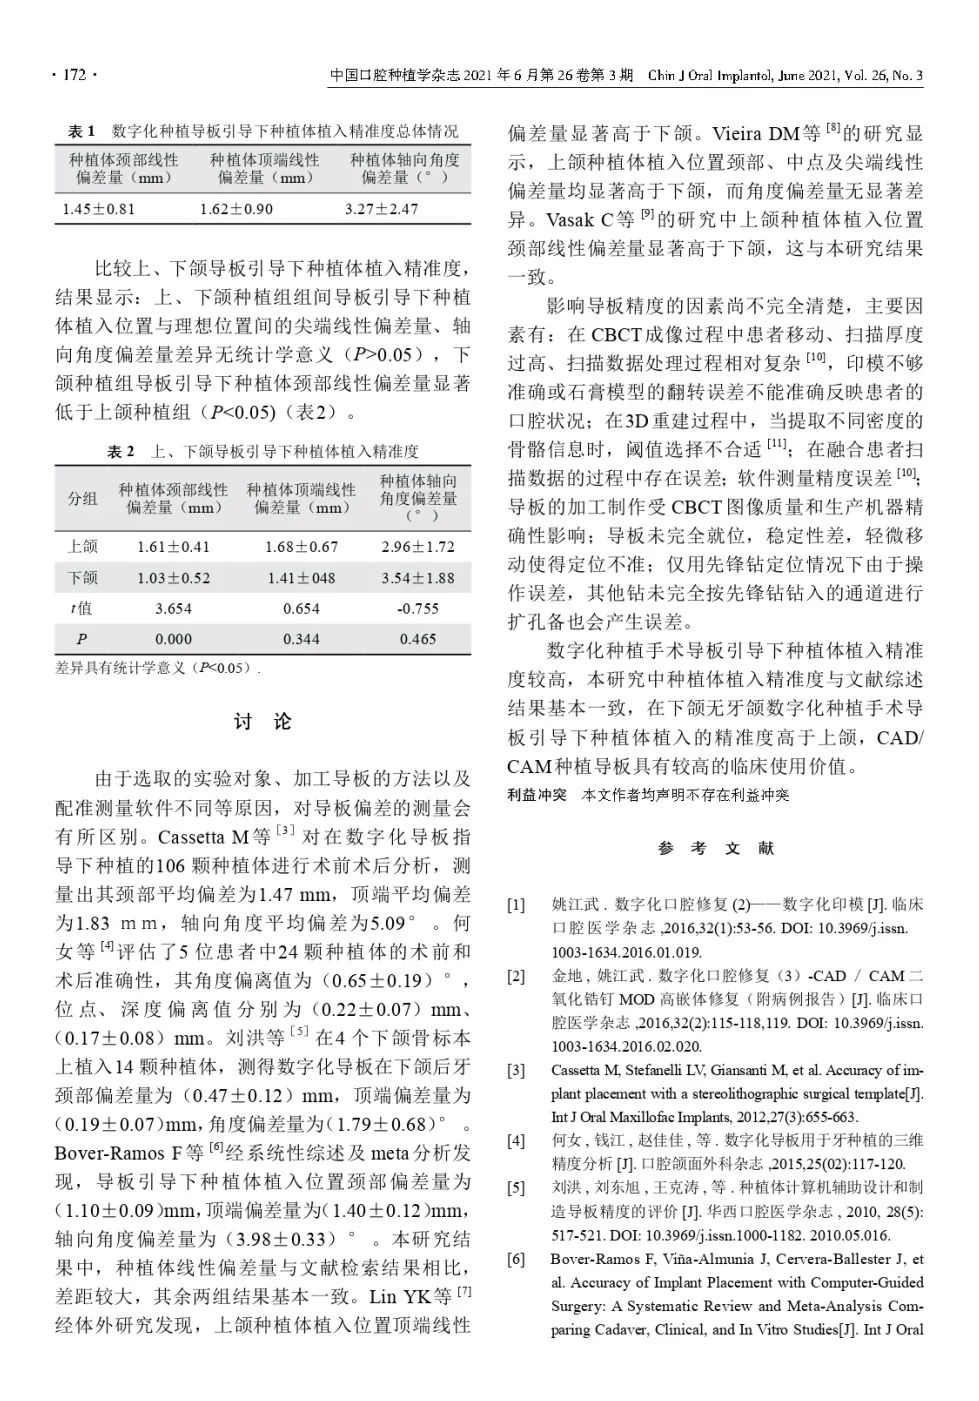 祝贺爱齿口腔：刘珊医生学术论文被口腔权威杂志收录刊登